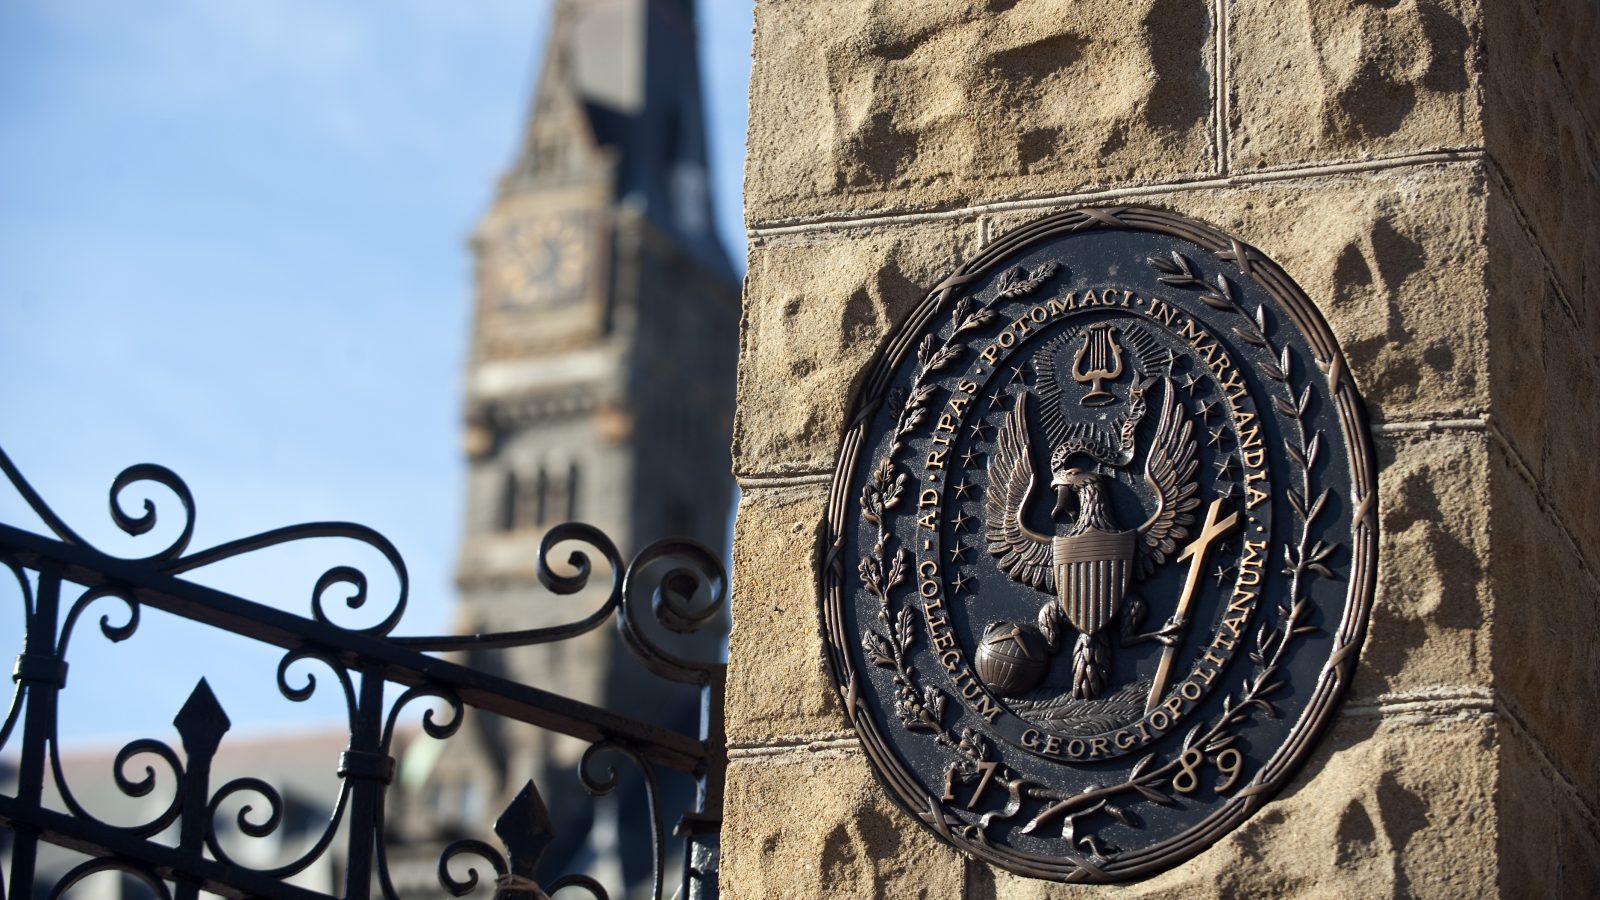 Georgetown University seal